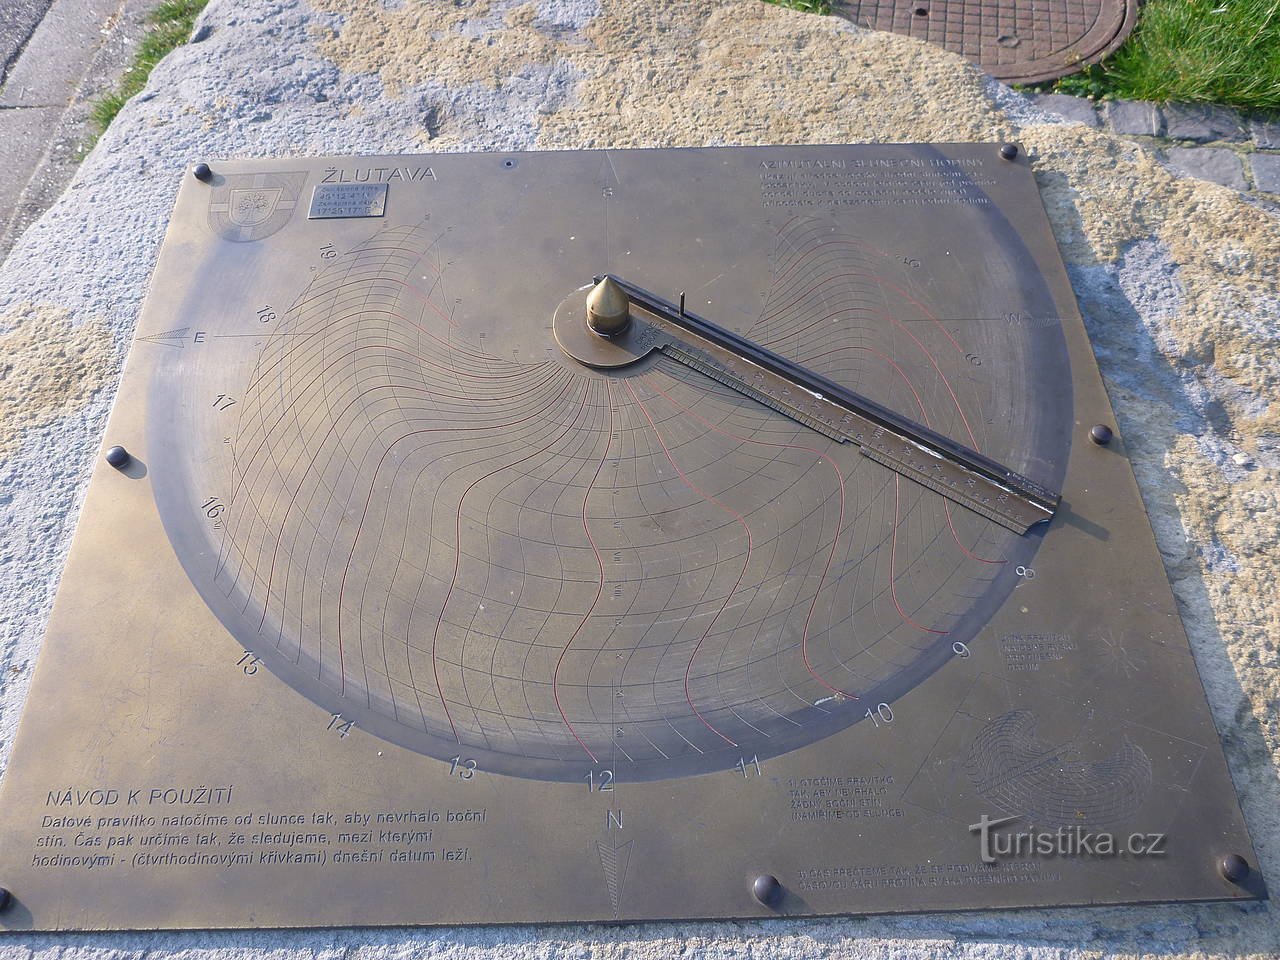 Đồng hồ mặt trời khác thường ở Žlutava.